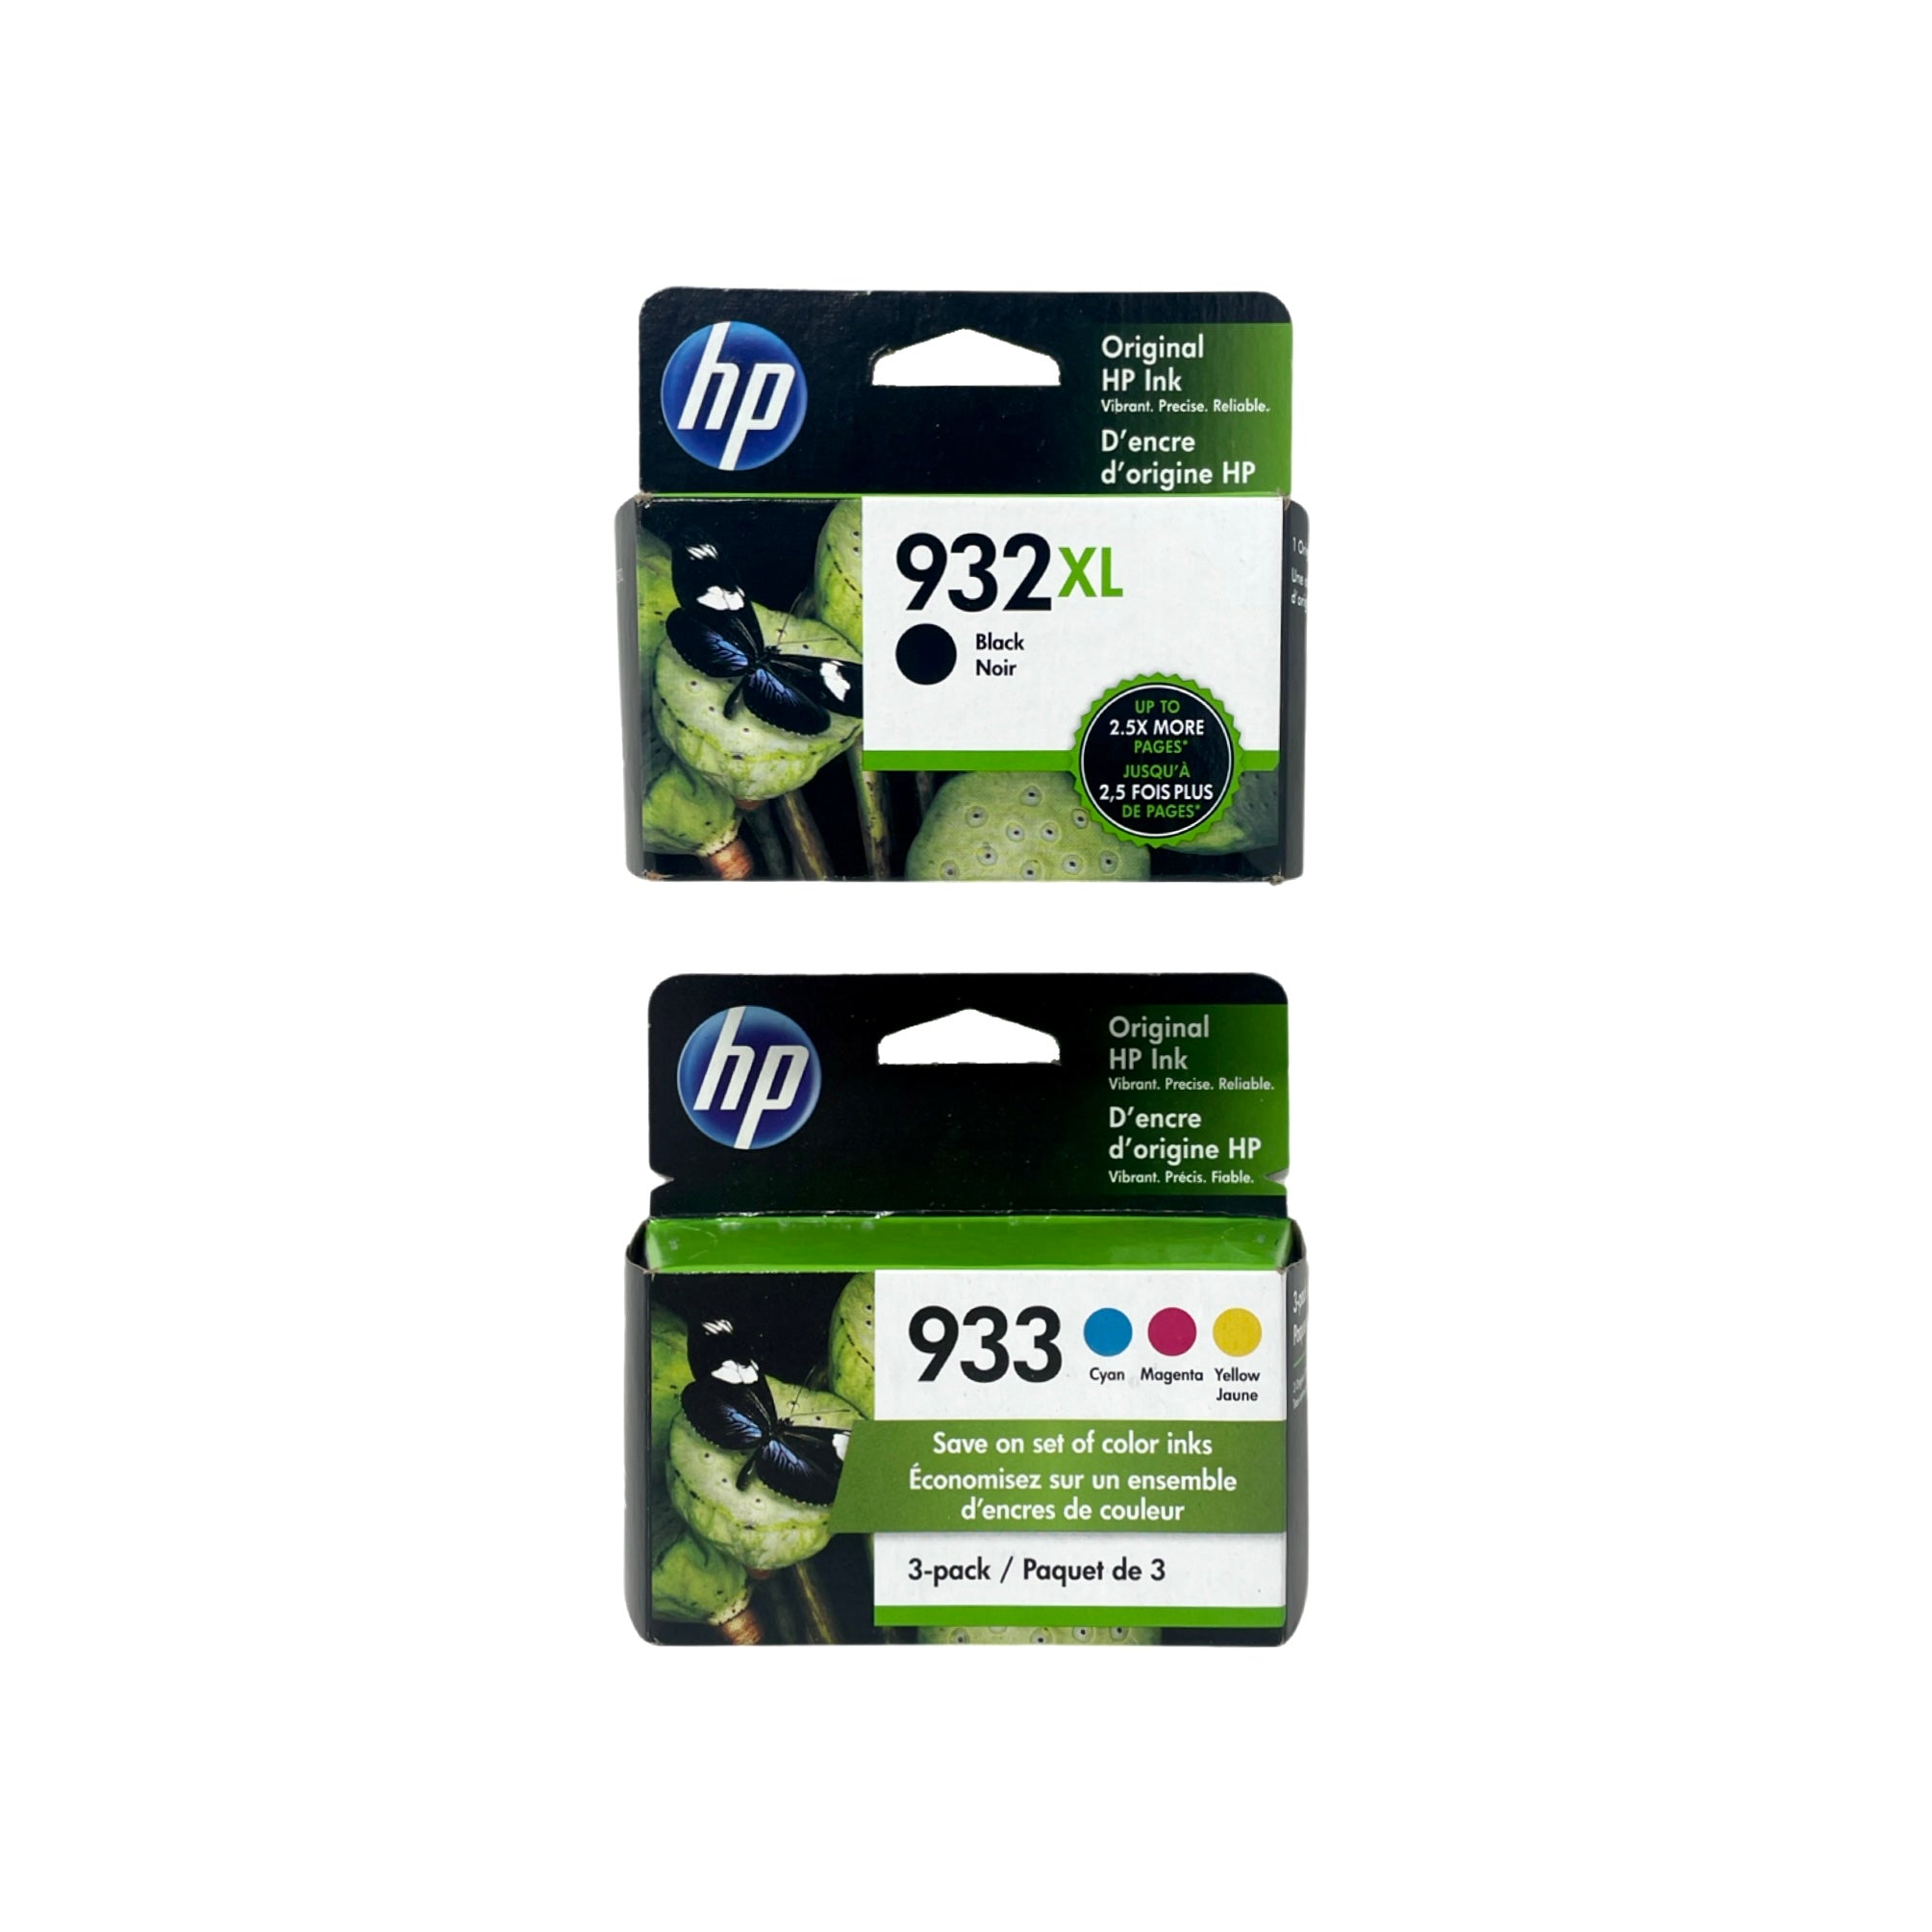 Genuine HP 932XL Black High-Yield & 933 Cyan, Magenta, Yellow Ink Cartridges, 4-Pack (N9H62FN)